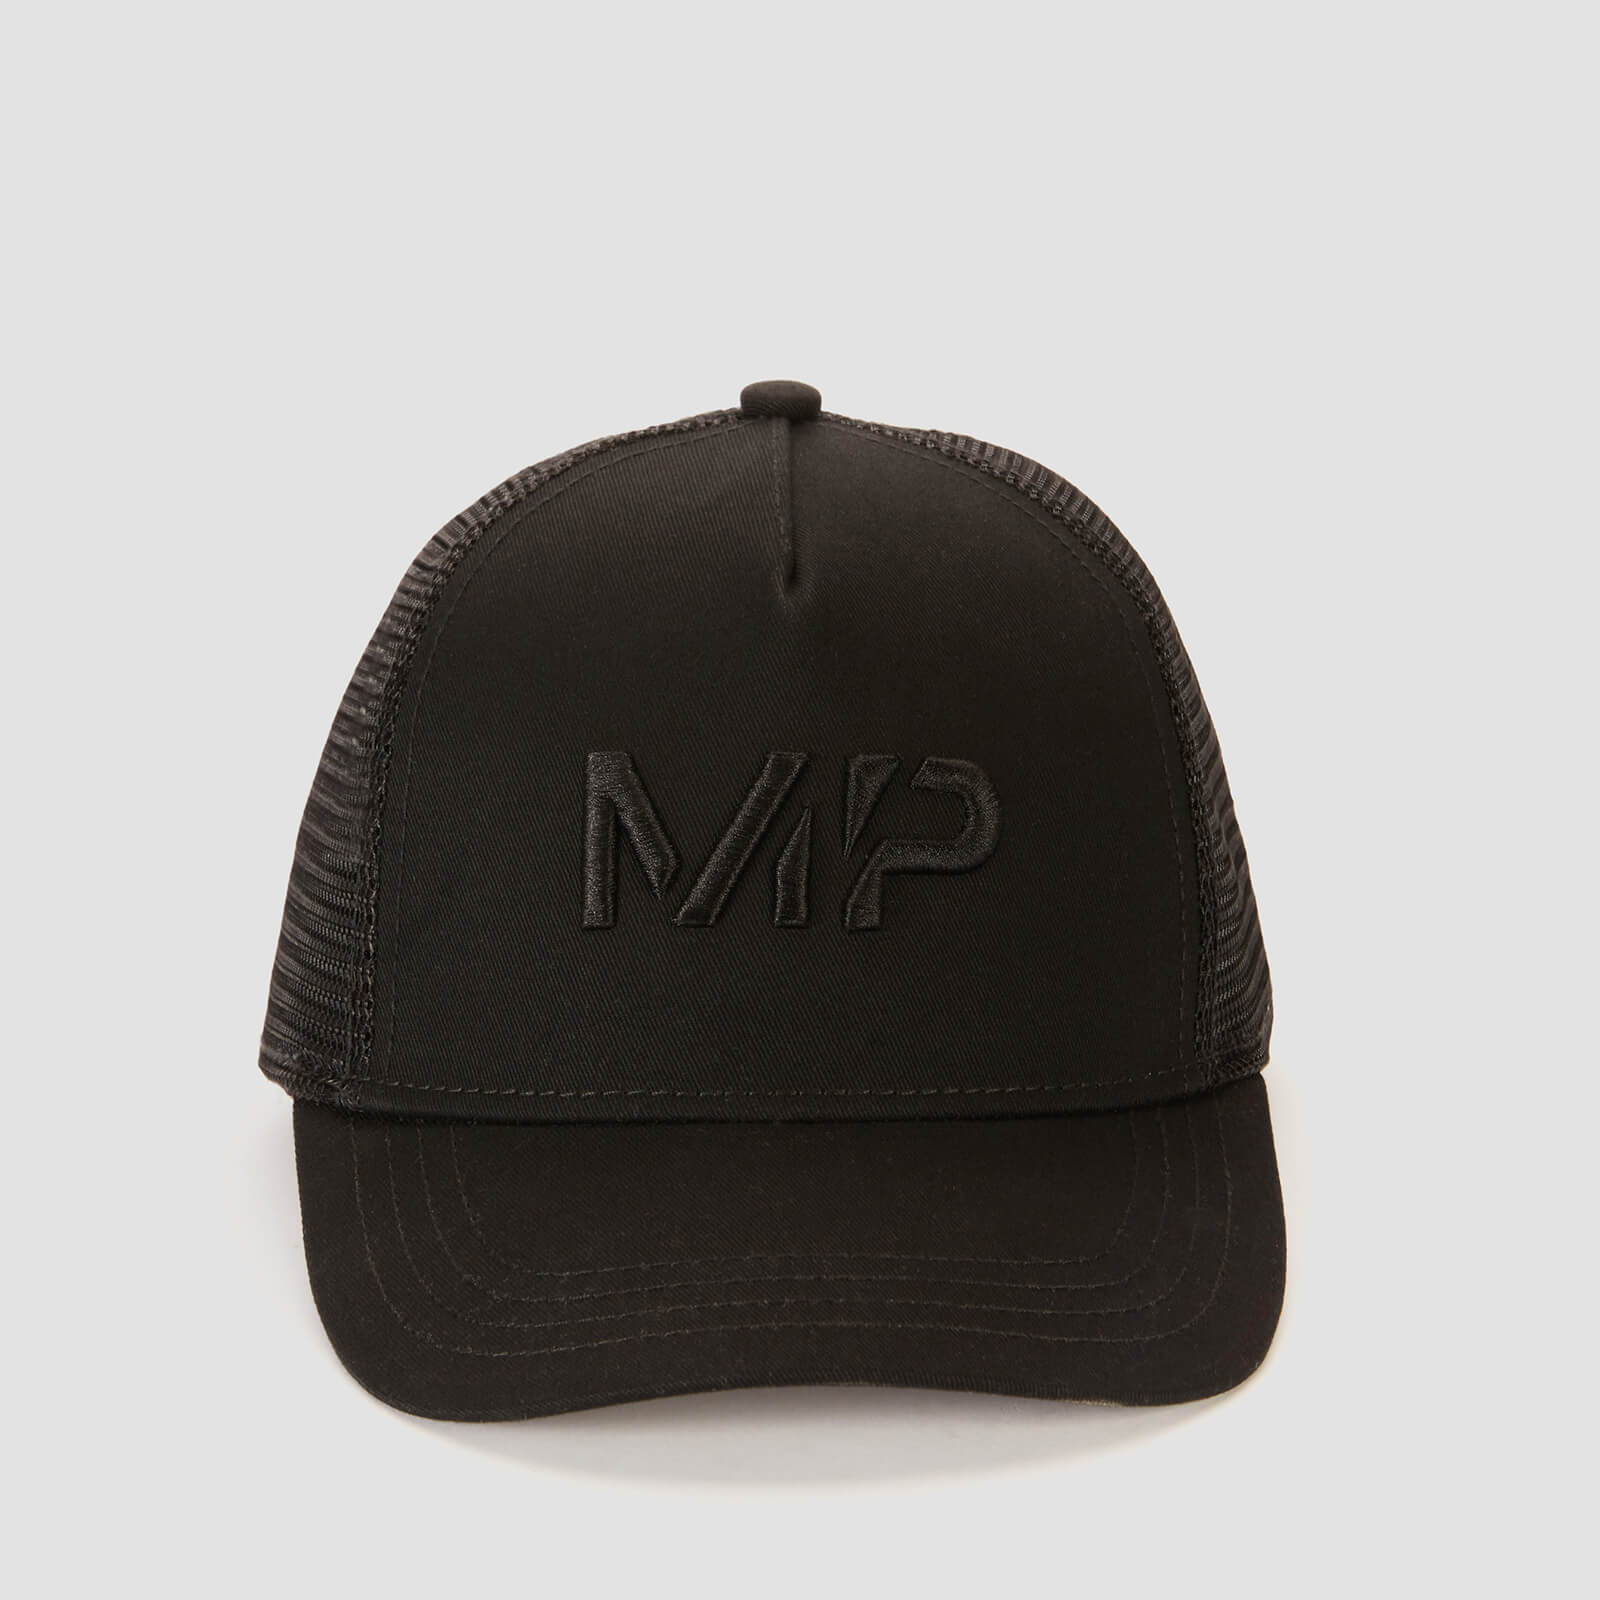 Mũ Trucker của MP - Màu Đen